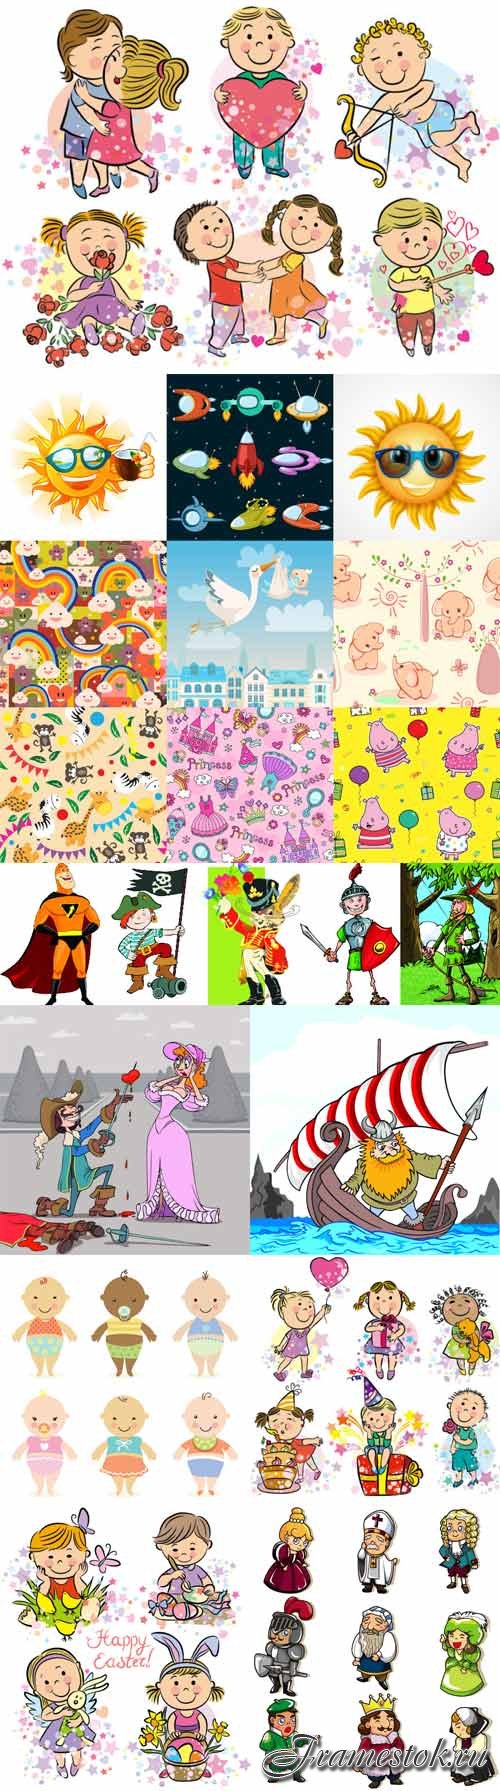 Kids cartoons vector